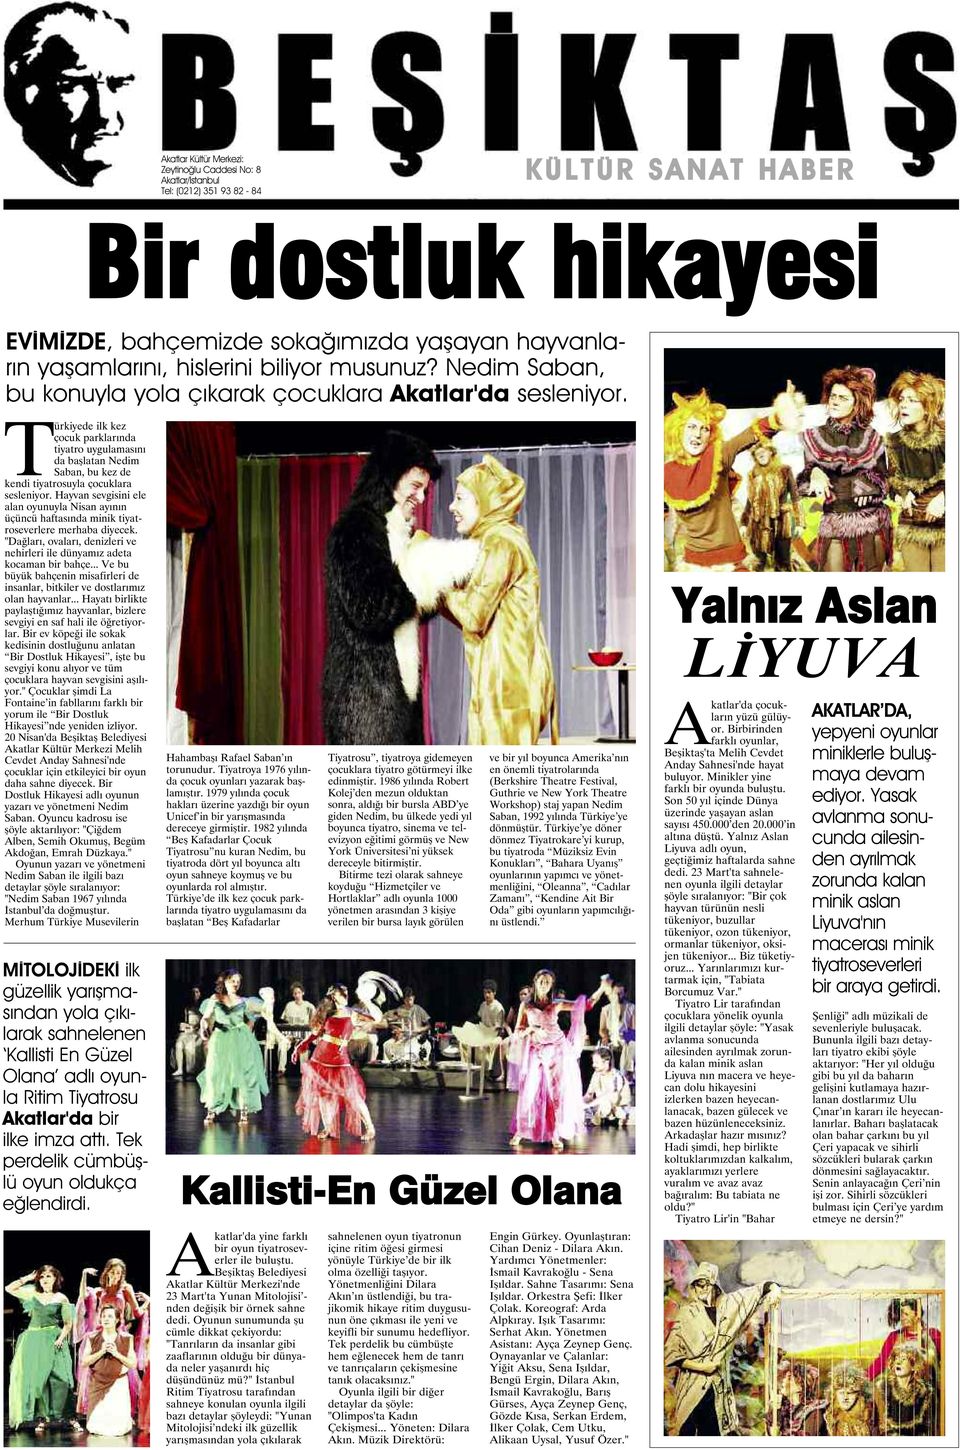 Türkiyede ilk kez çocuk parklarında tiyatro uygulamasını da başlatan Nedim Saban, bu kez de kendi tiyatrosuyla çocuklara sesleniyor.